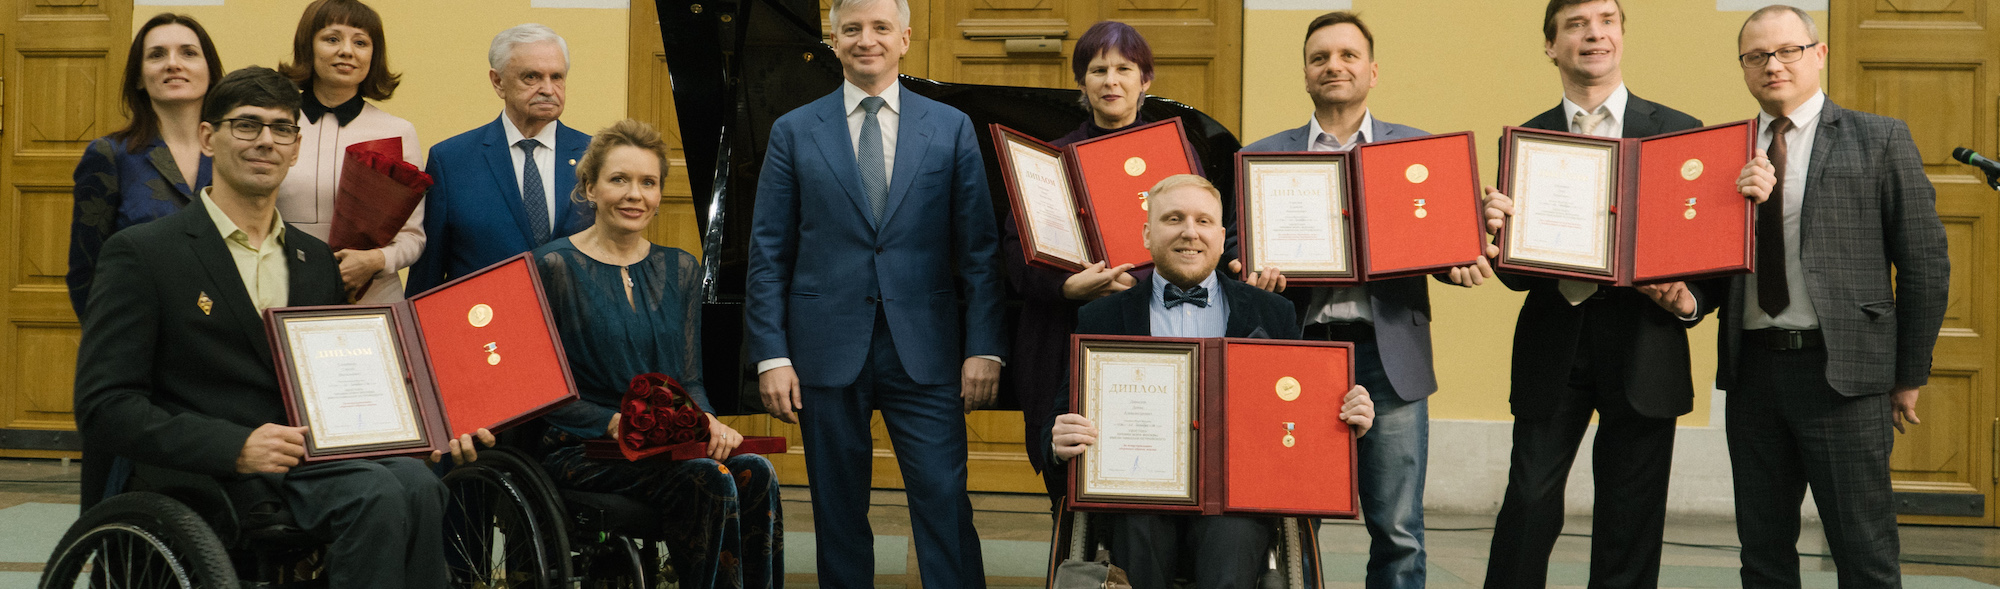 превью публикации Прием заявок на Премии Мэра Москвы имени Николая Островского 2021 для людей с инвалидностью